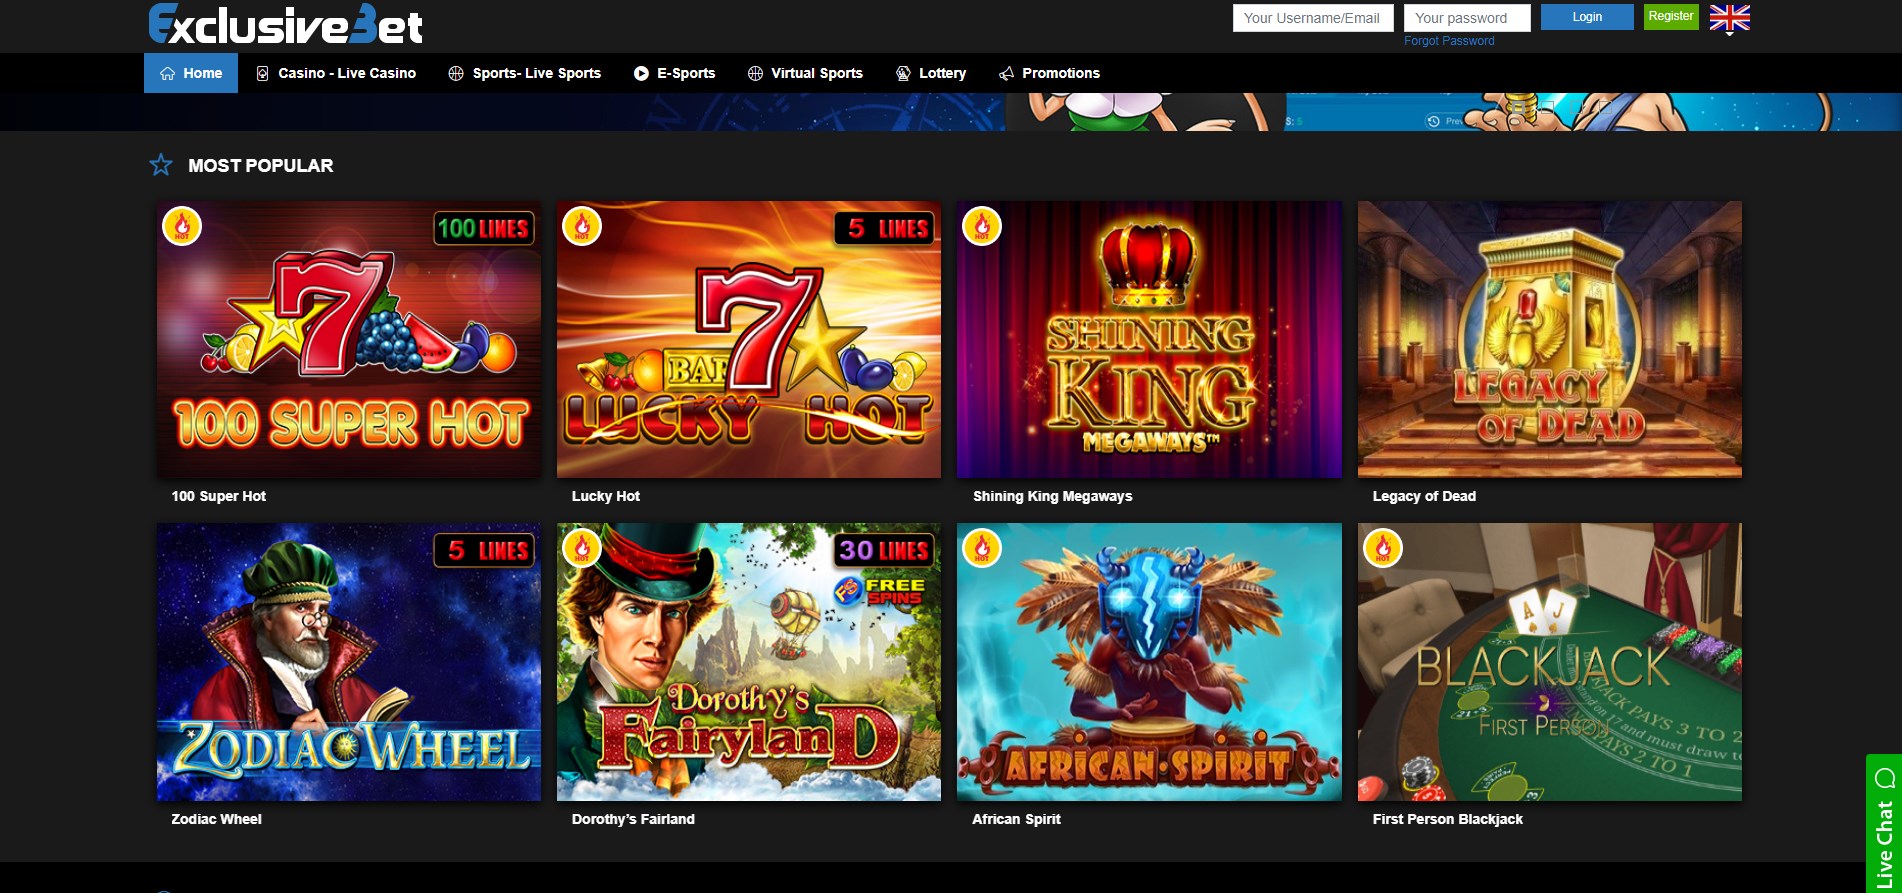 ExclusiveBet Casino Games